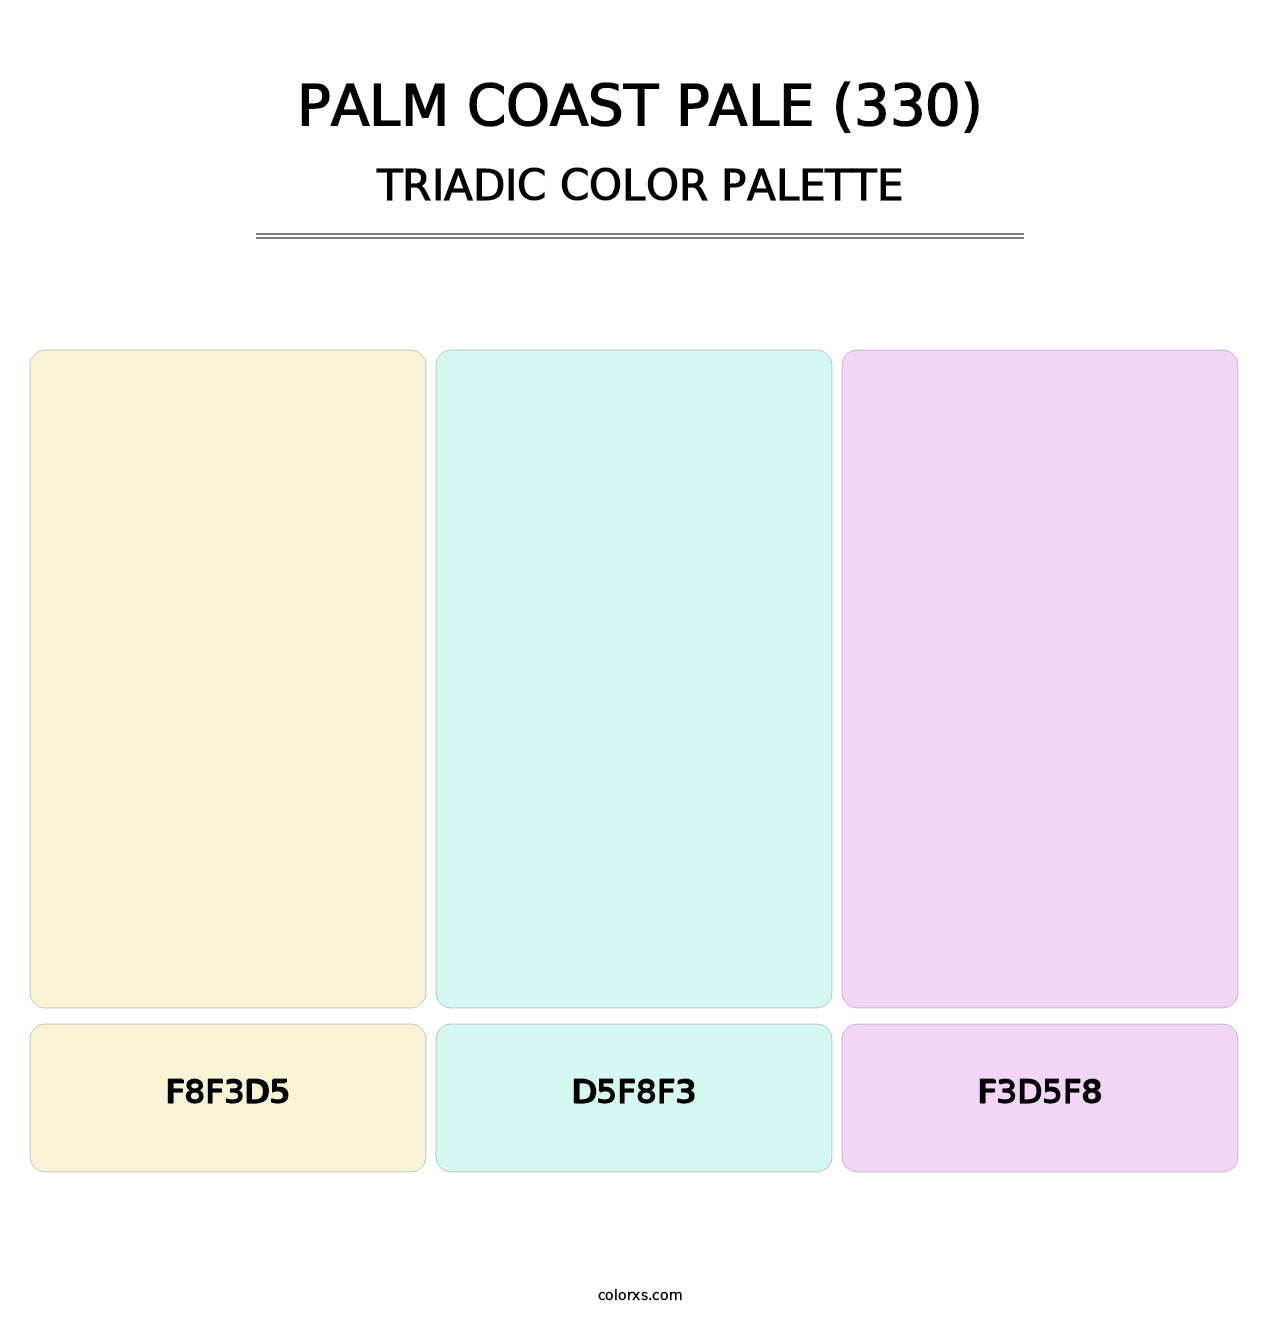 Palm Coast Pale (330) - Triadic Color Palette